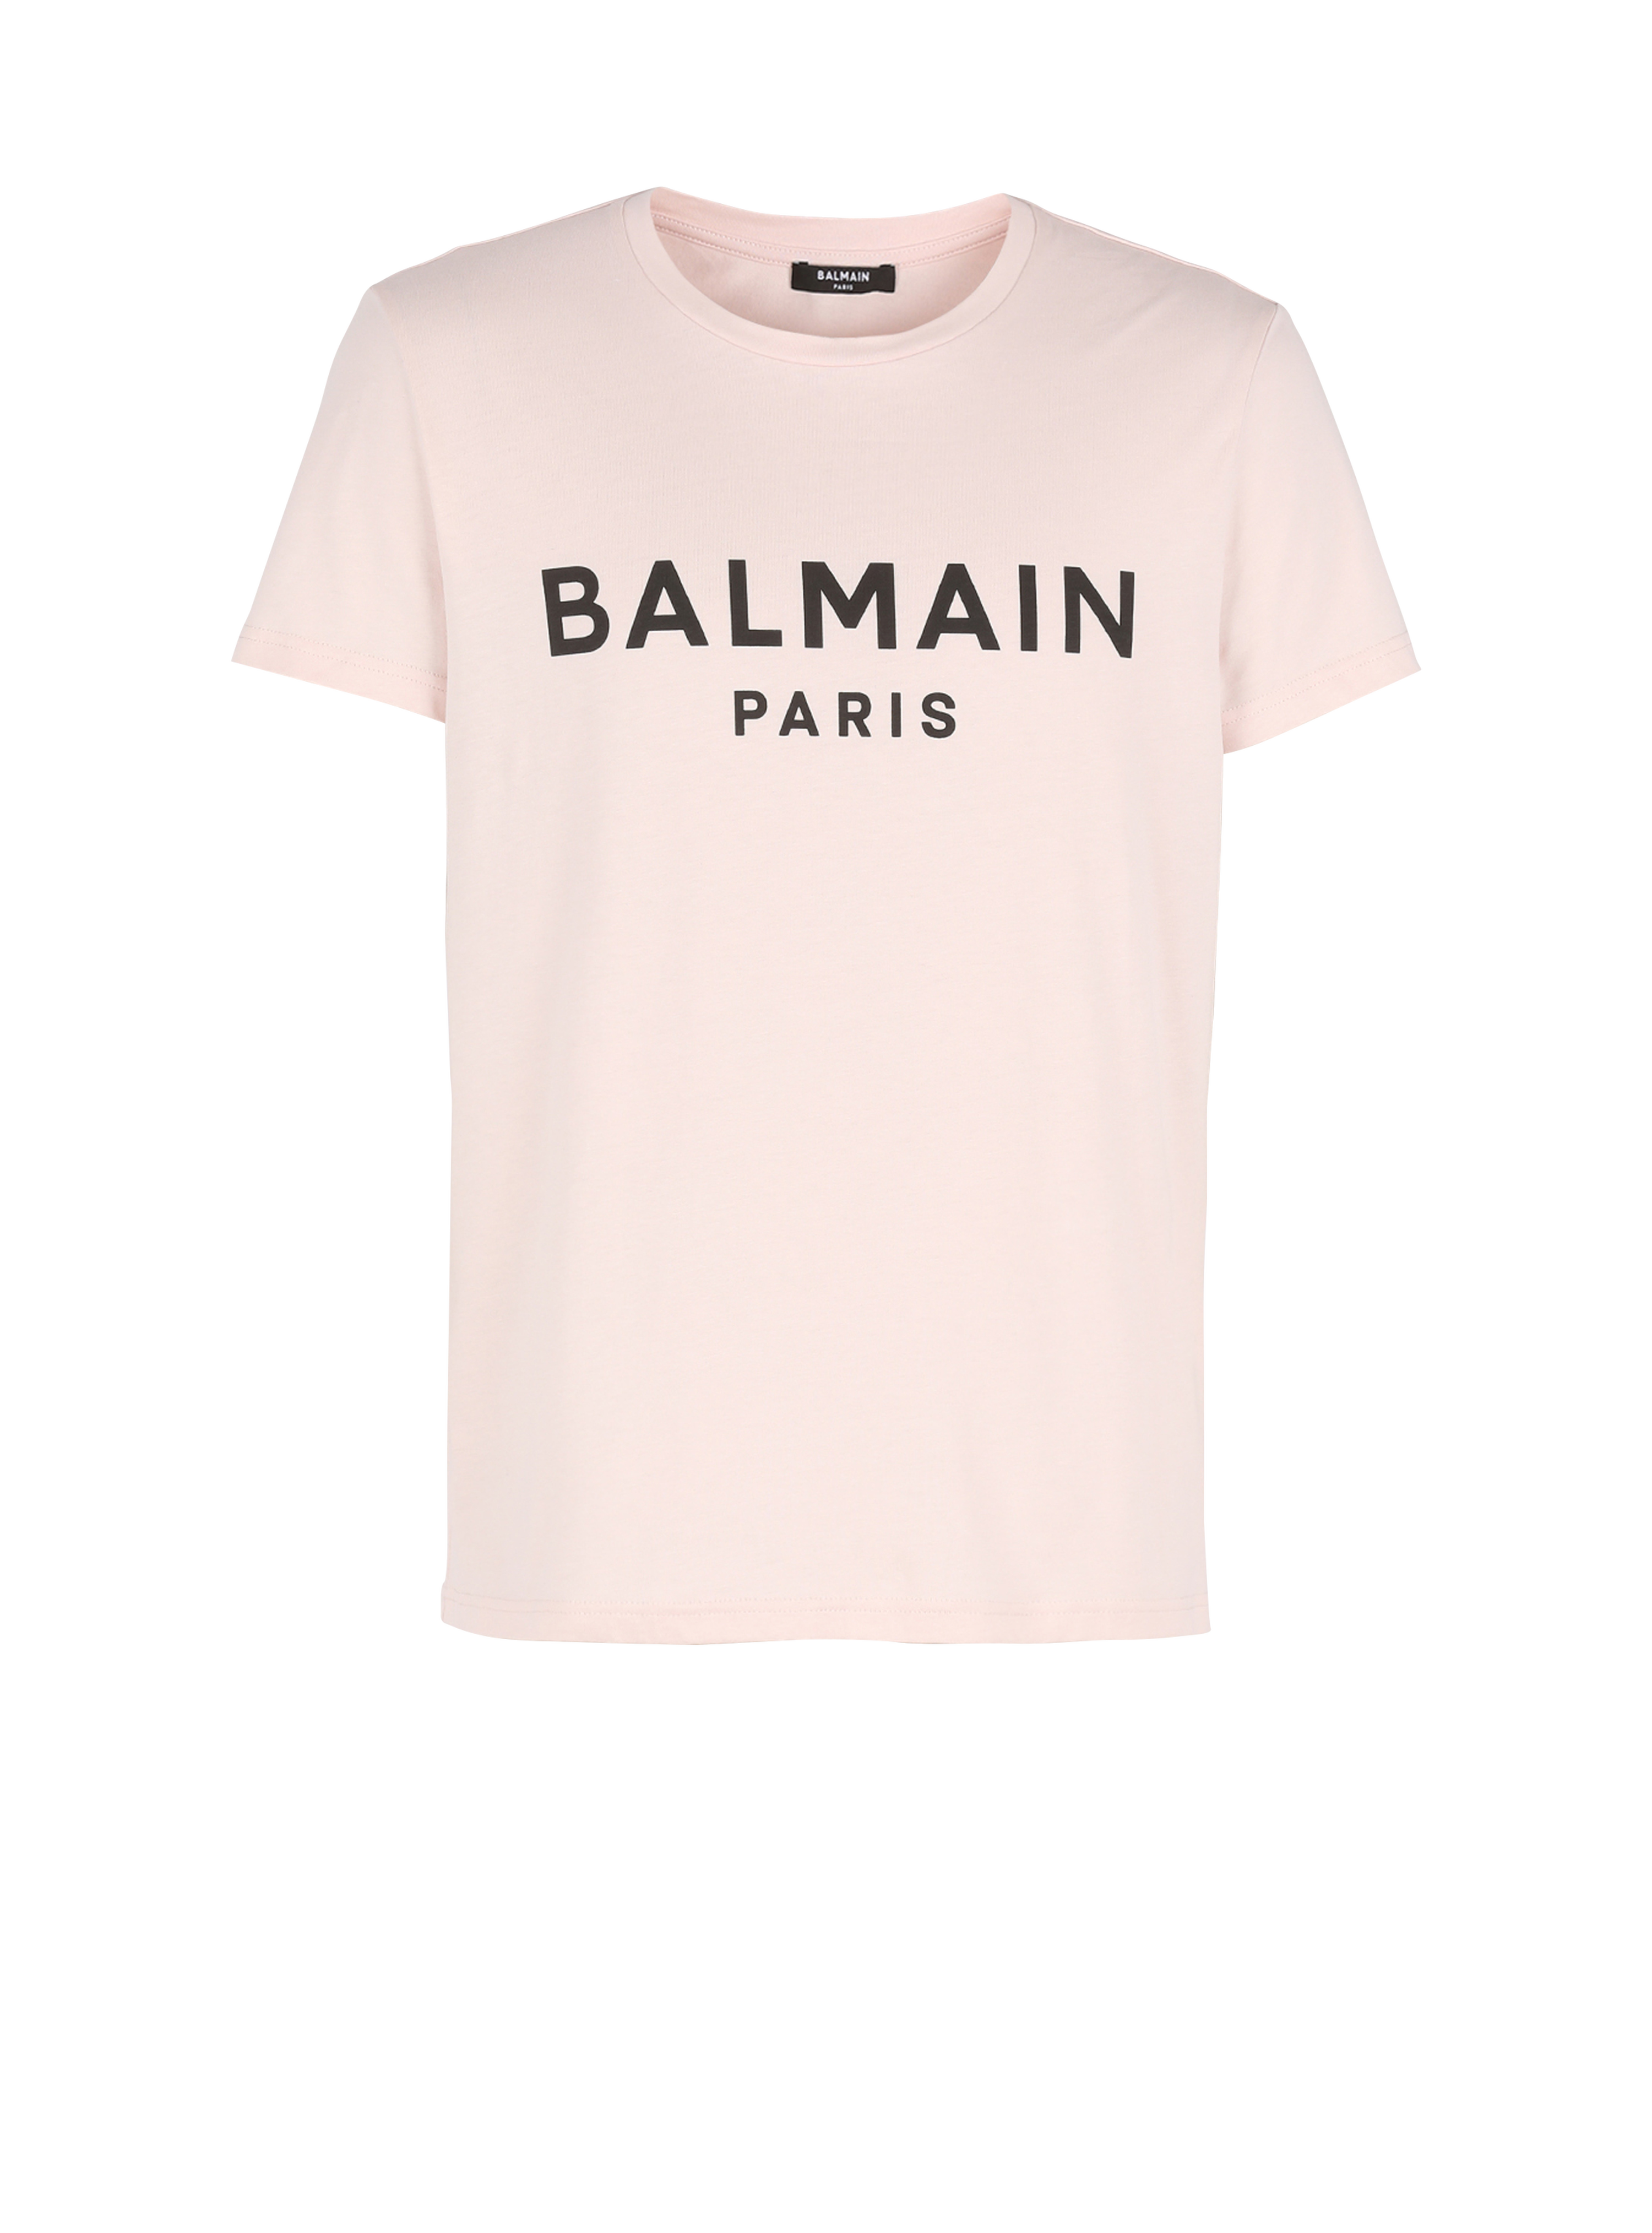 Eco-designed cotton T-shirt with Balmain Paris logo print, pink